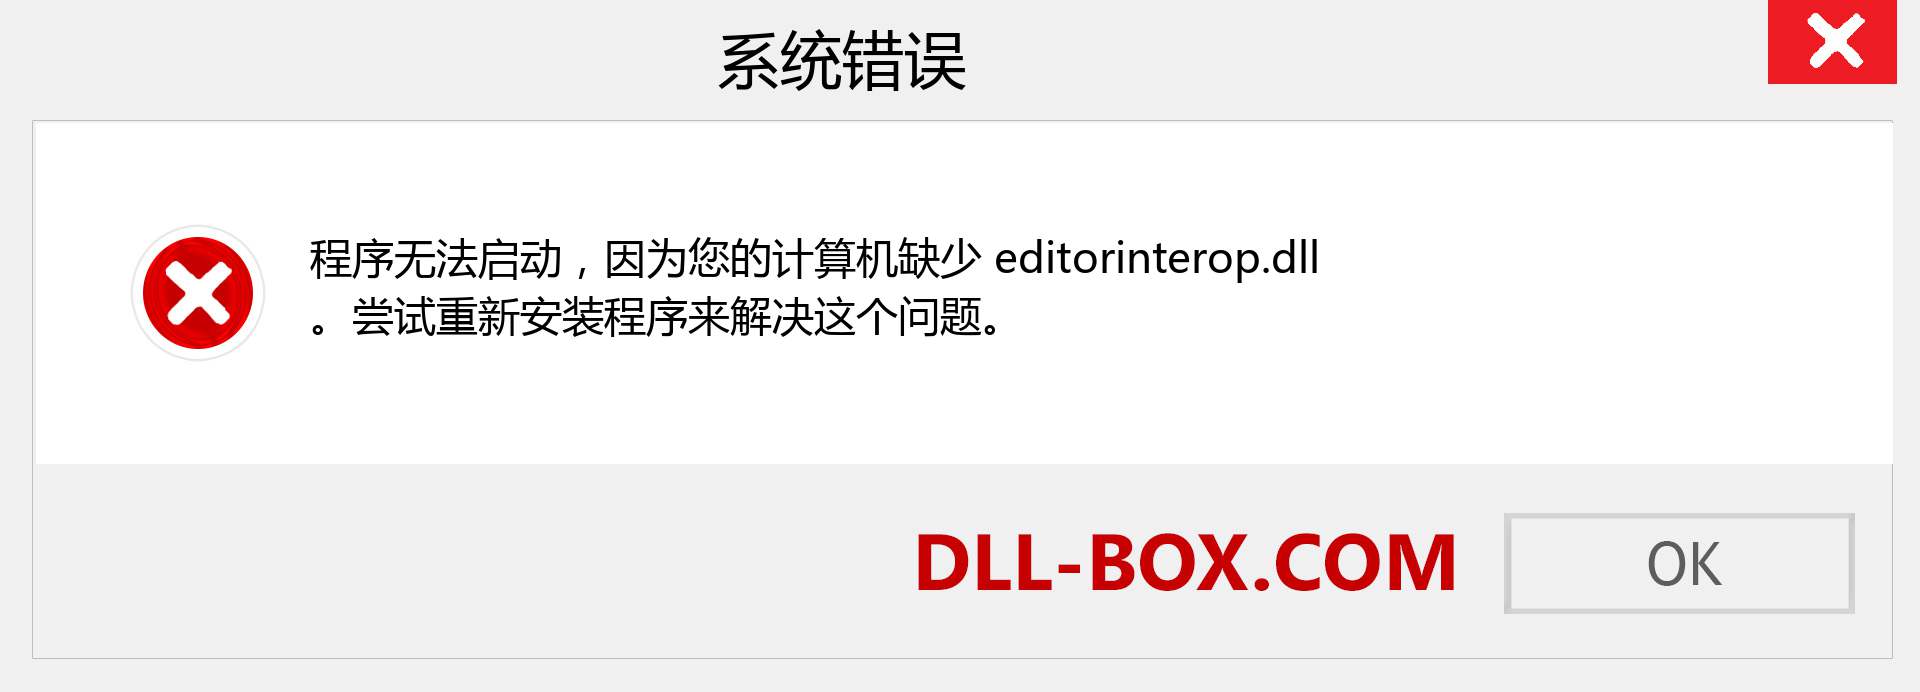 editorinterop.dll 文件丢失？。 适用于 Windows 7、8、10 的下载 - 修复 Windows、照片、图像上的 editorinterop dll 丢失错误